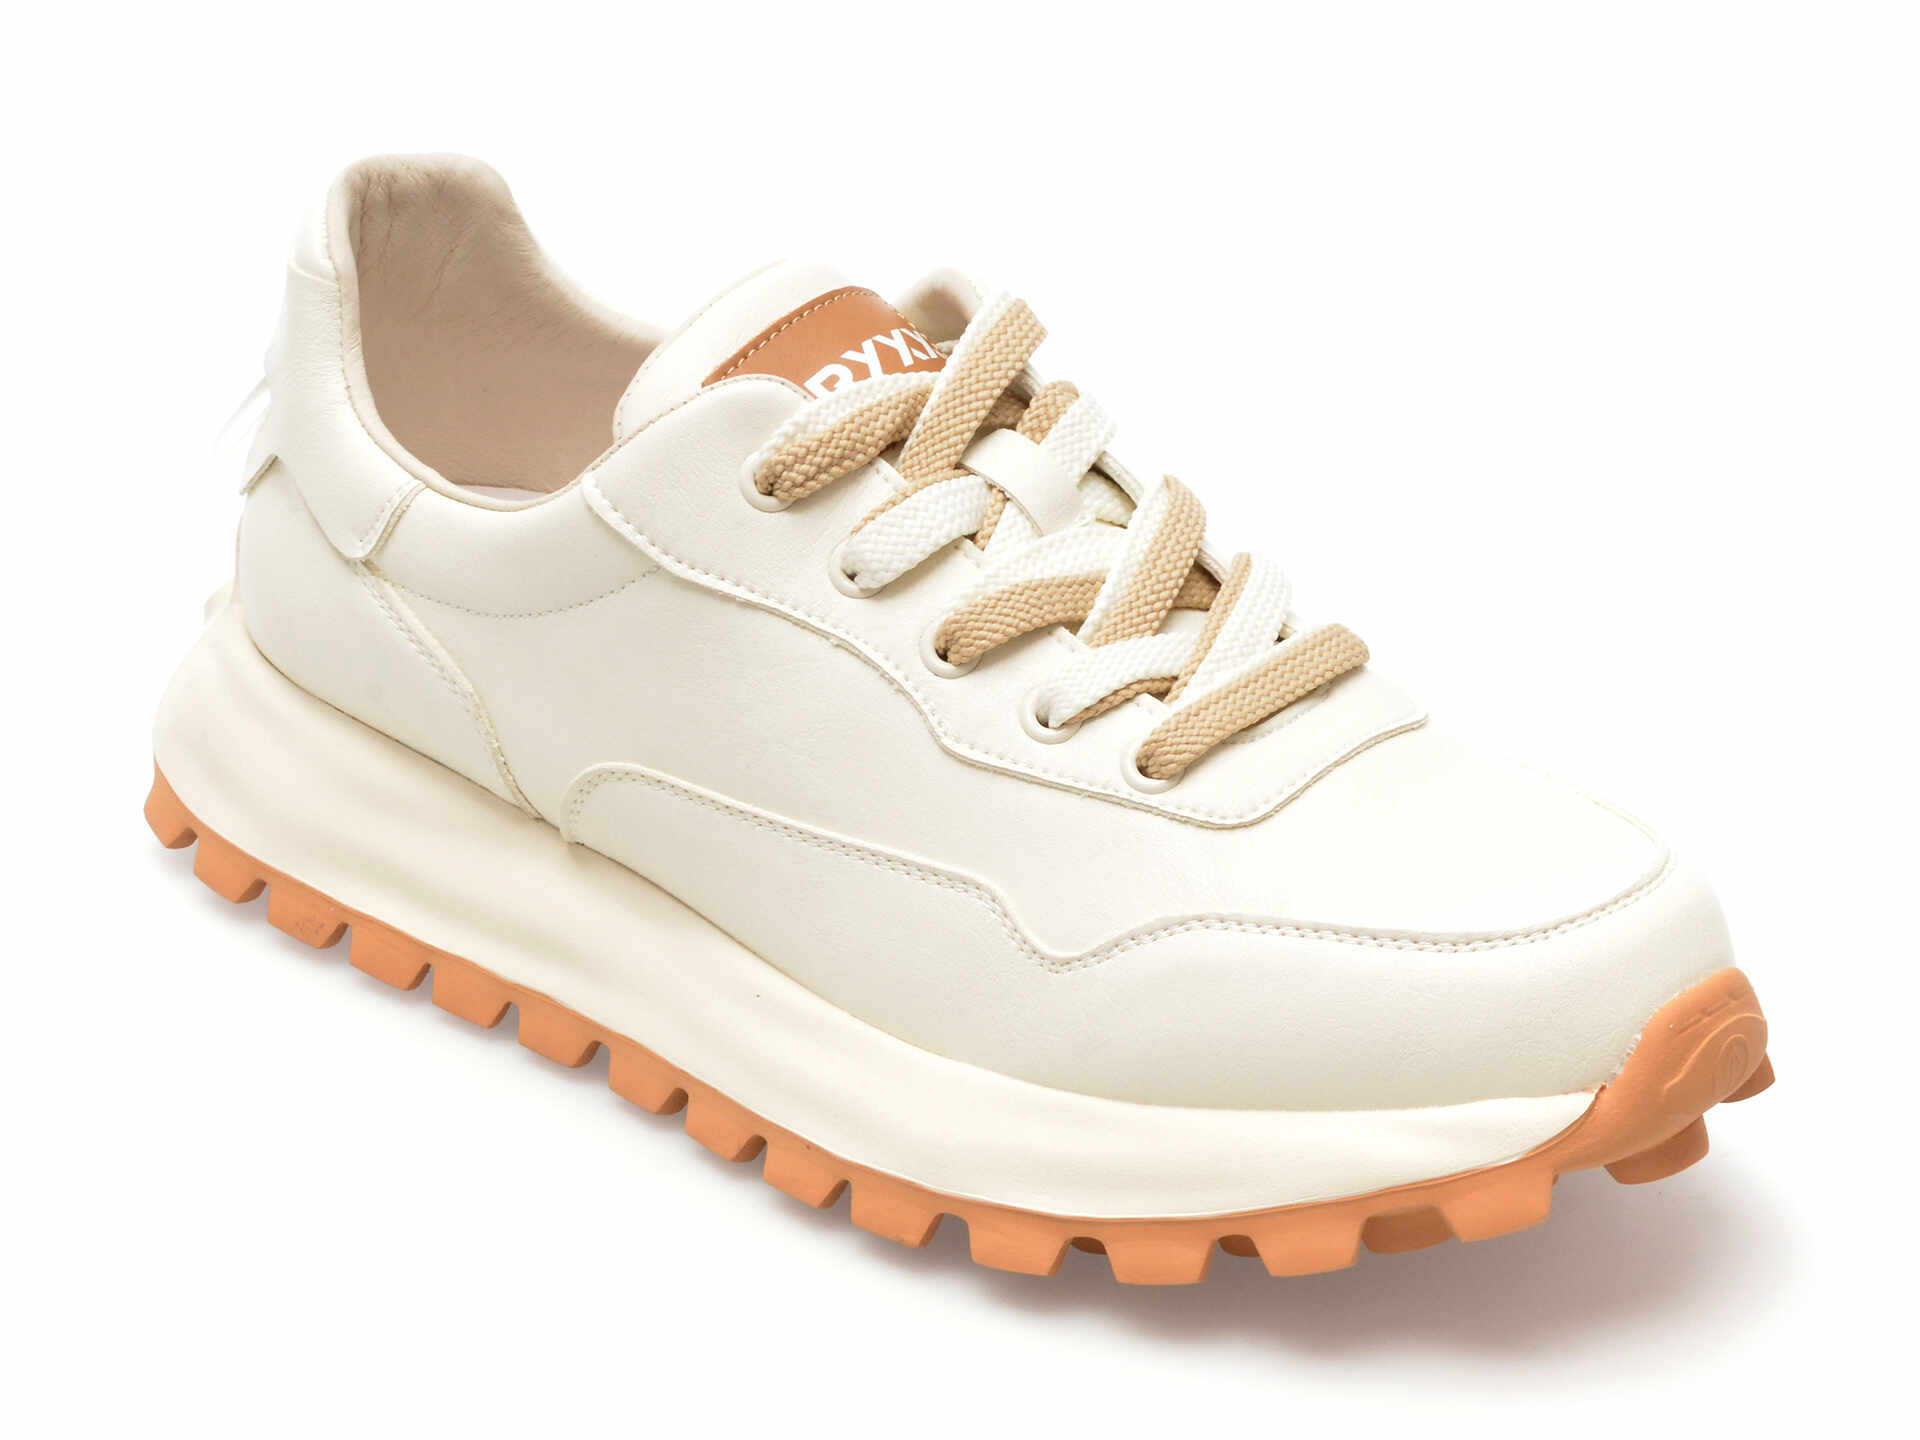 Pantofi GRYXX albi, 5335, din piele naturala